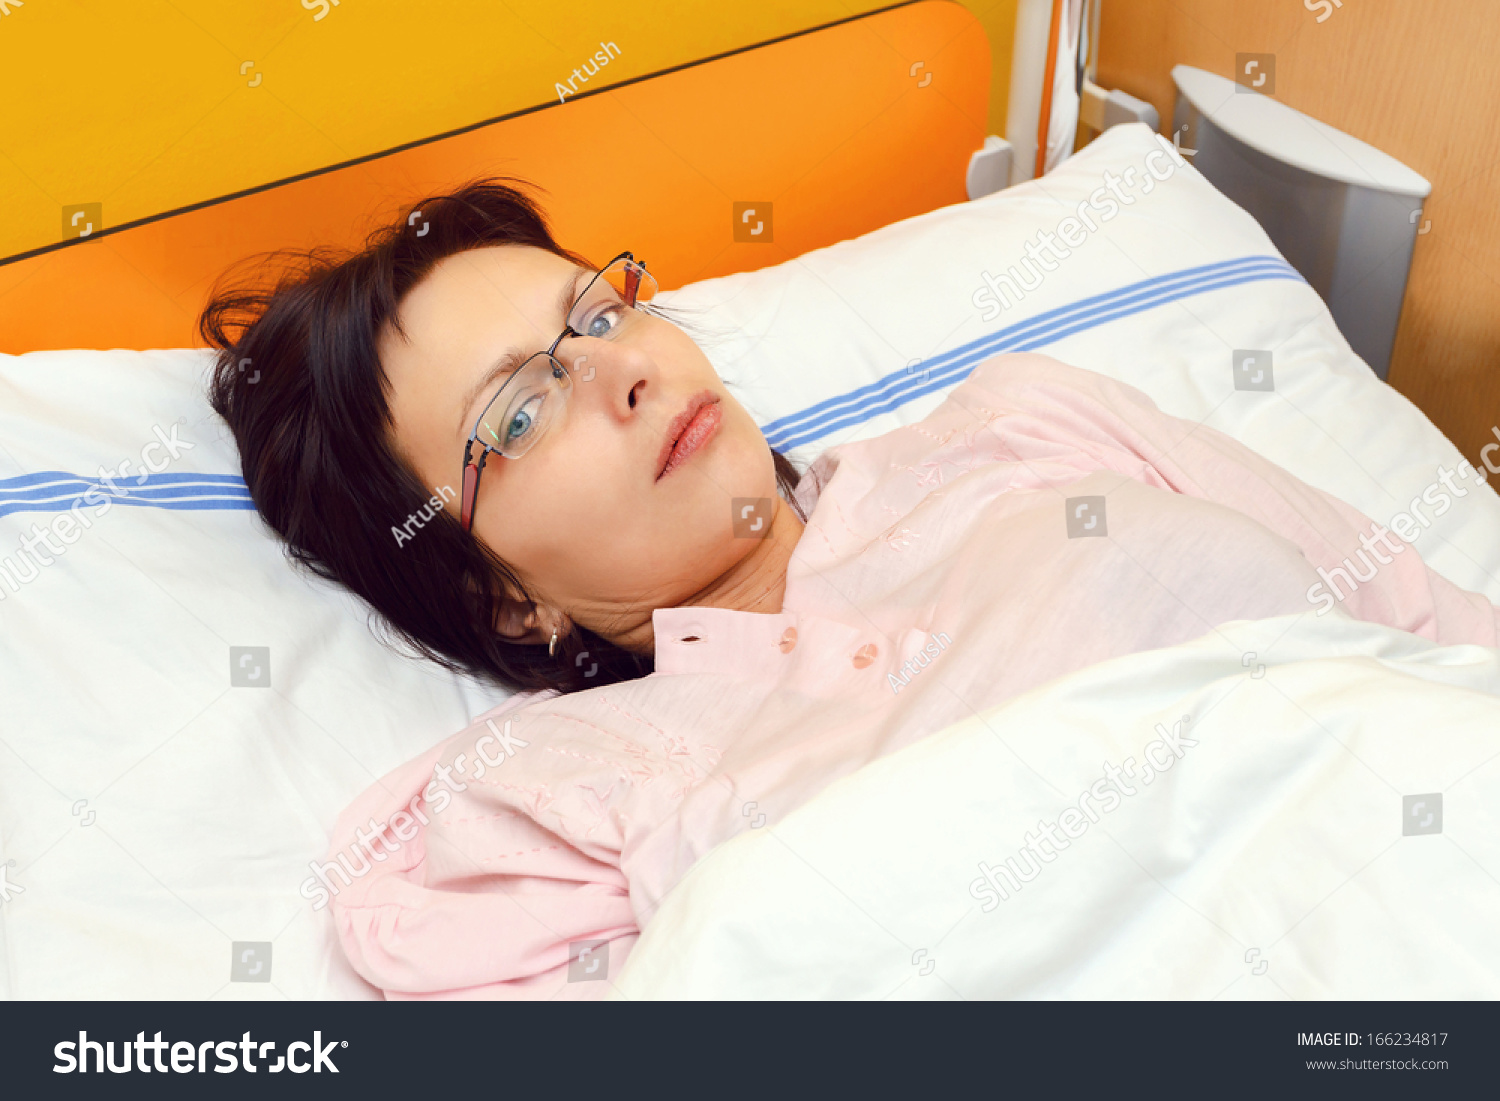 Сонник лежала в больнице. Женщина лежит в больнице фото.